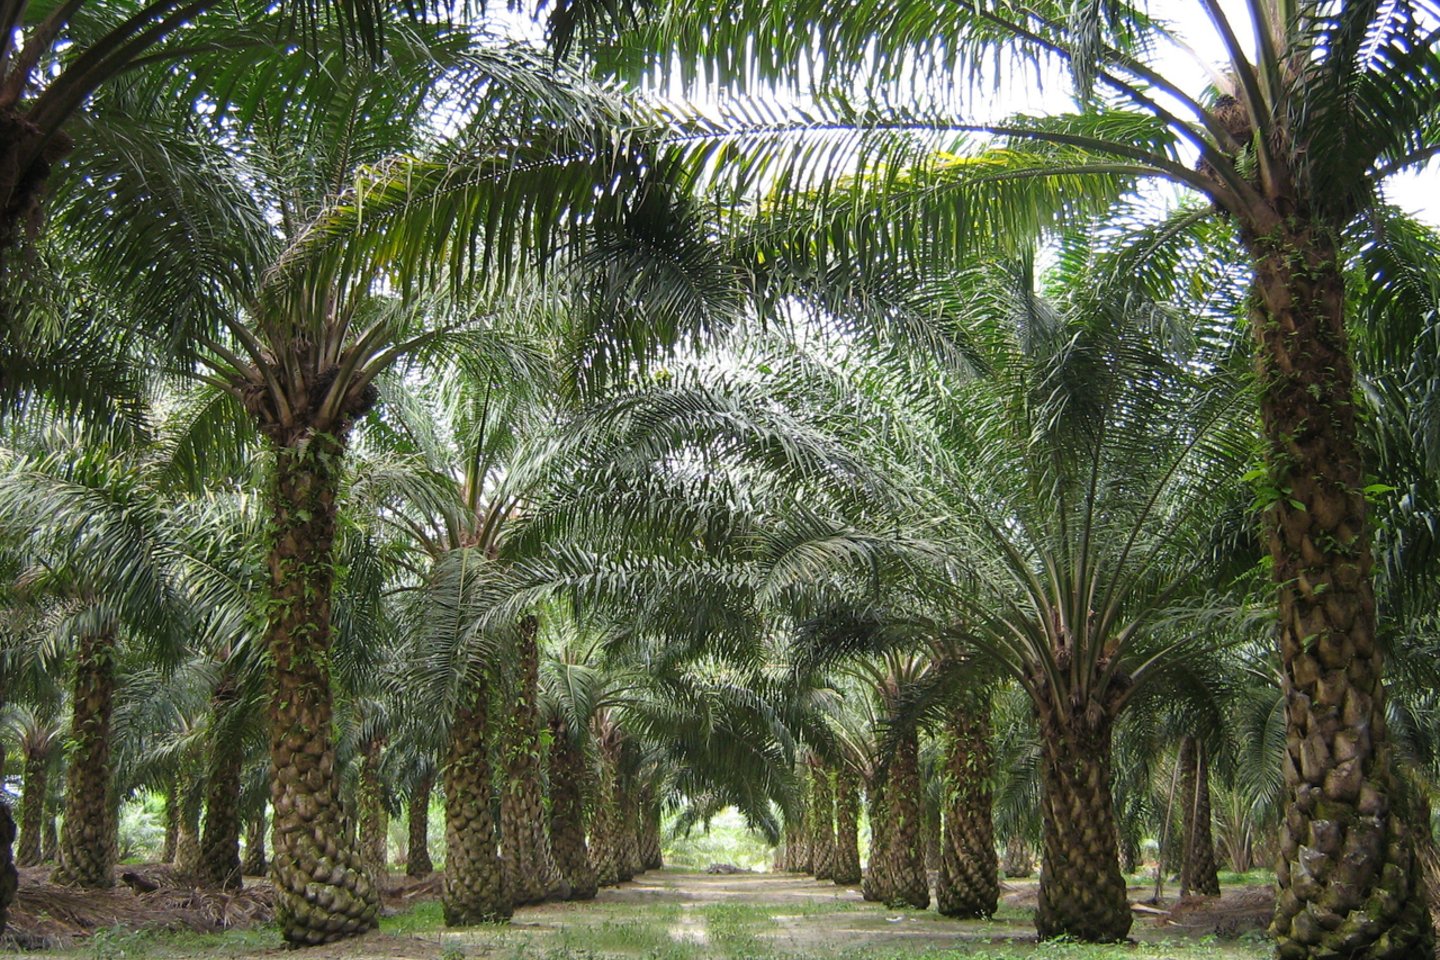 Indonezijoje ir Malaizijoje sparčiai kertami atogrąžų miškai (85 proc. palmių aliejaus pagamina šiose šalyse). Vien tik Indonezijoje iki 2025 m. bus sunaikinta 26 mln. hektarų atogrąžų miško, o atlaisvinta žemės užsodinta alyvpalmėmis – šis plotas beveik 4 kartus didesnis už Lietuvą.<br> Wikipedia nuotr.